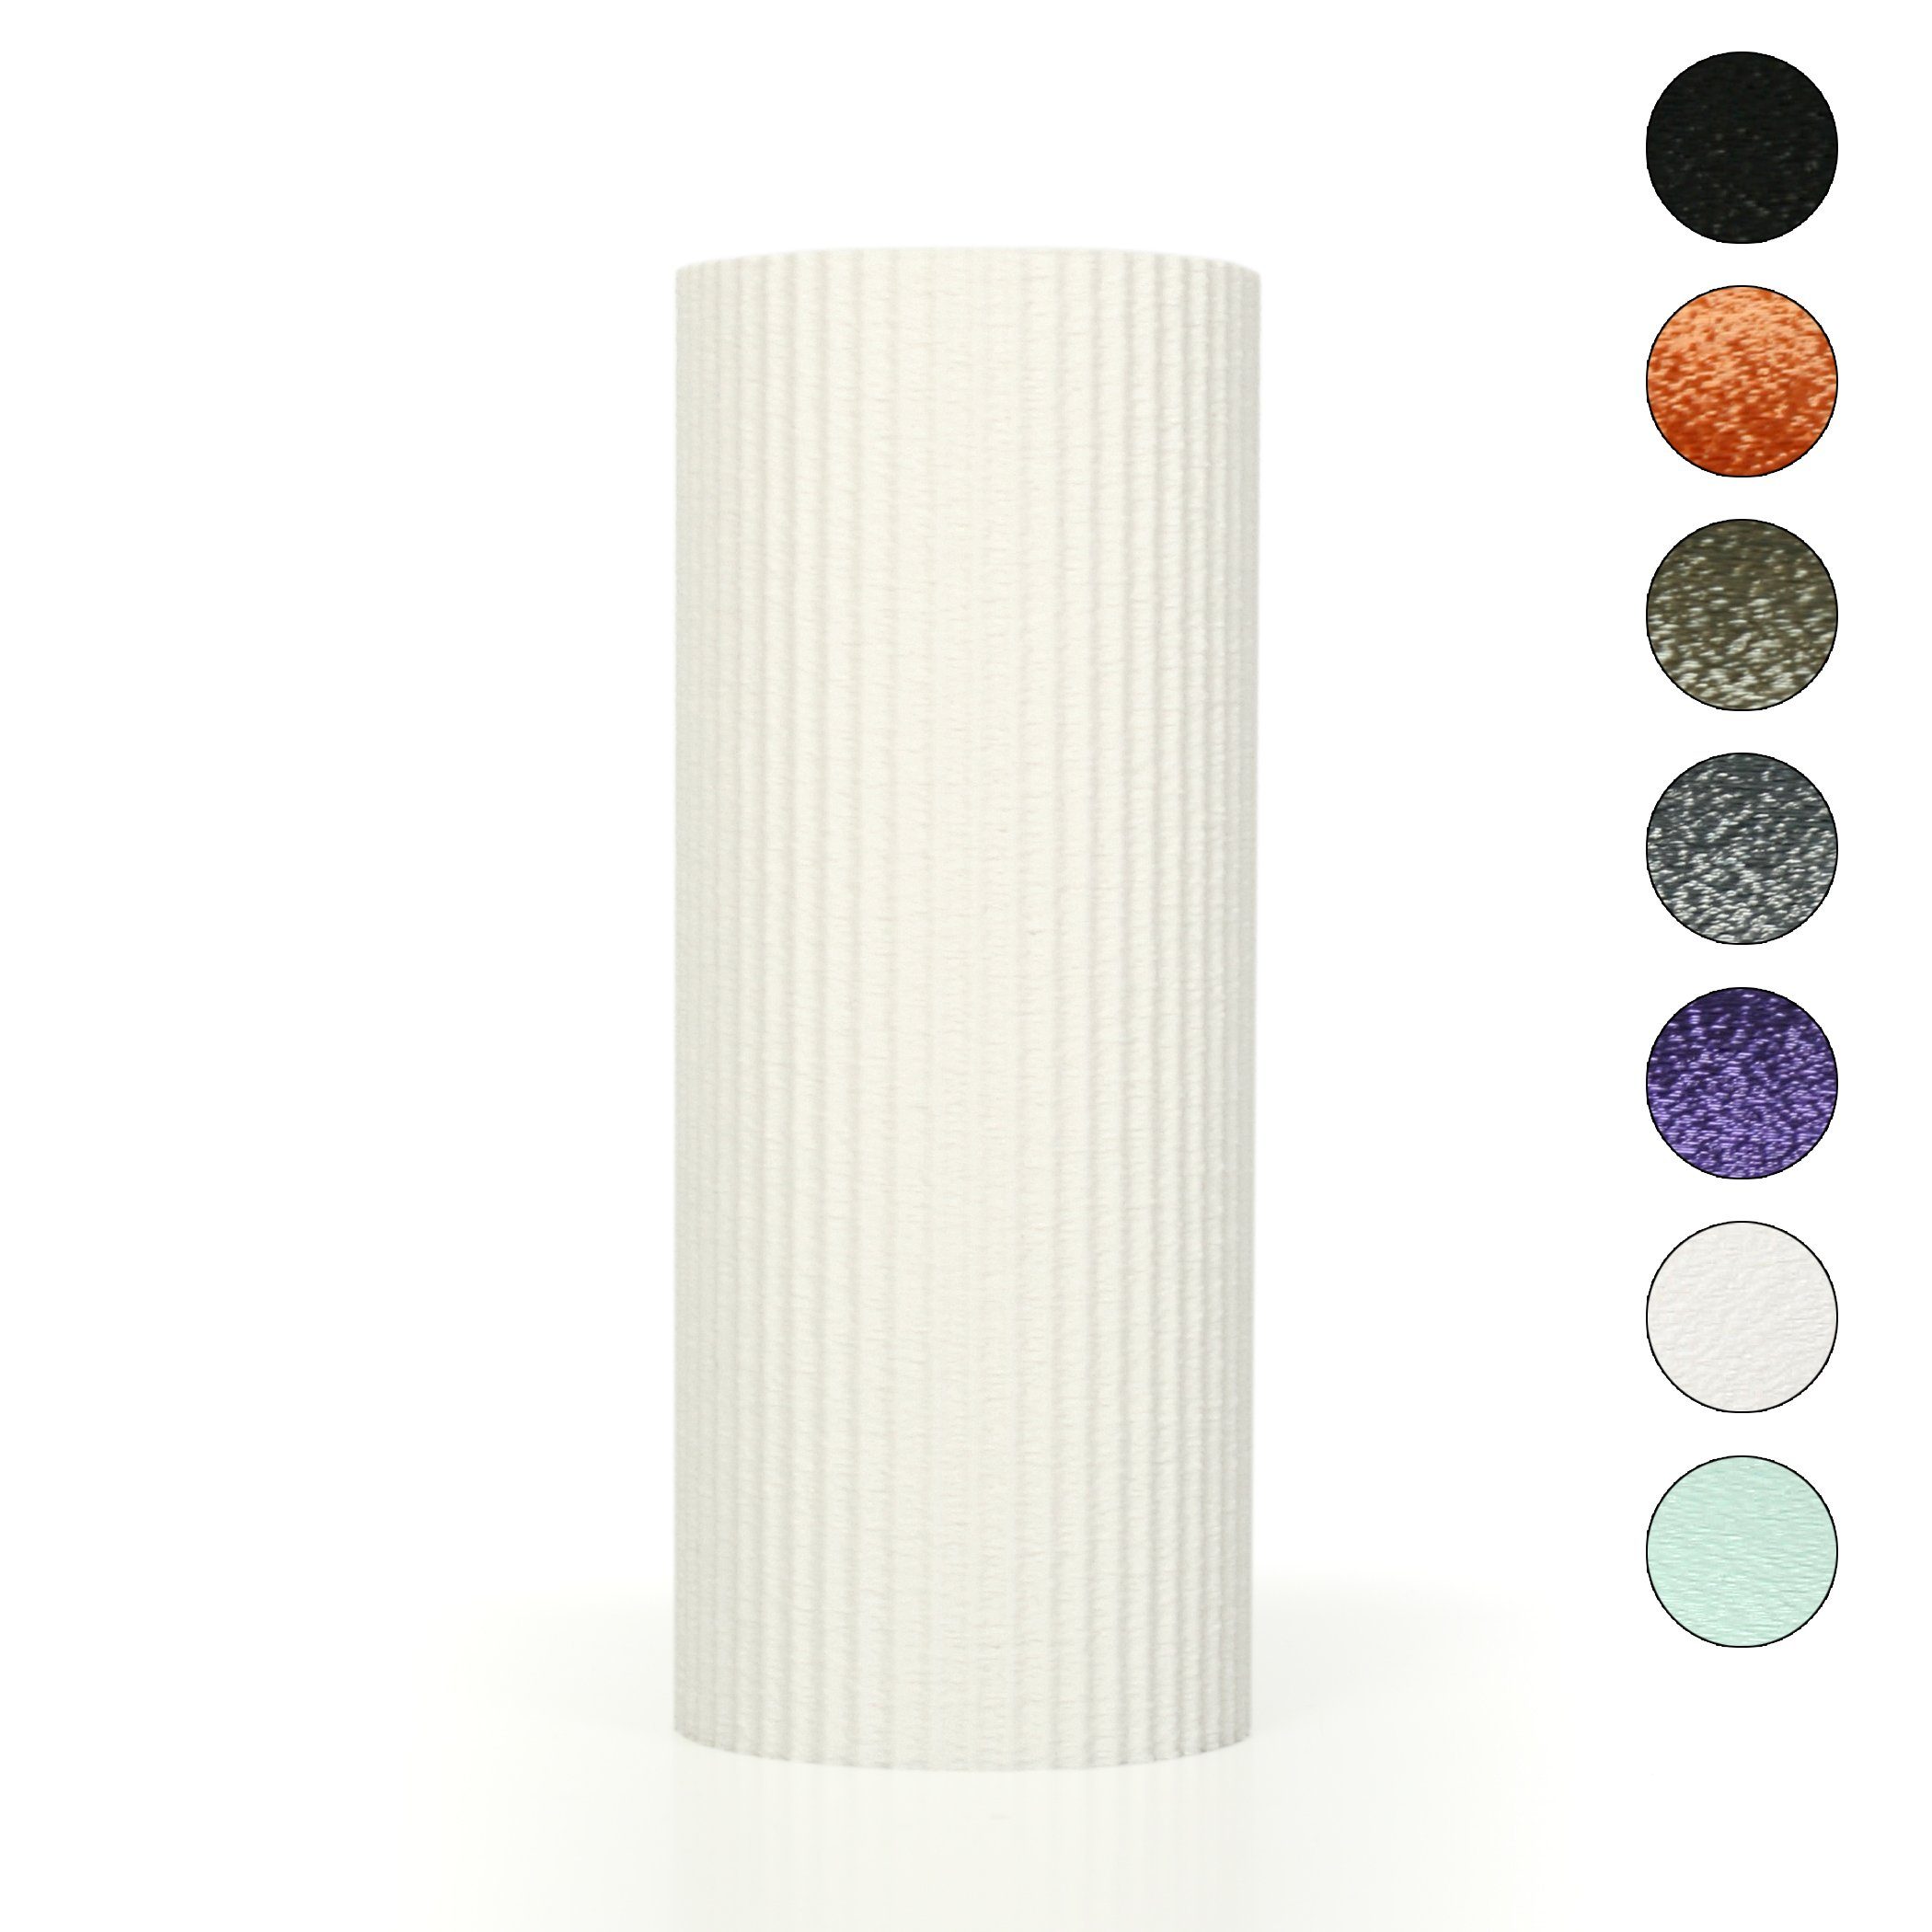 Kreative Feder Dekovase Designer Vase – Dekorative Blumenvase aus Bio-Kunststoff, aus nachwachsenden Rohstoffen; wasserdicht & bruchsicher White